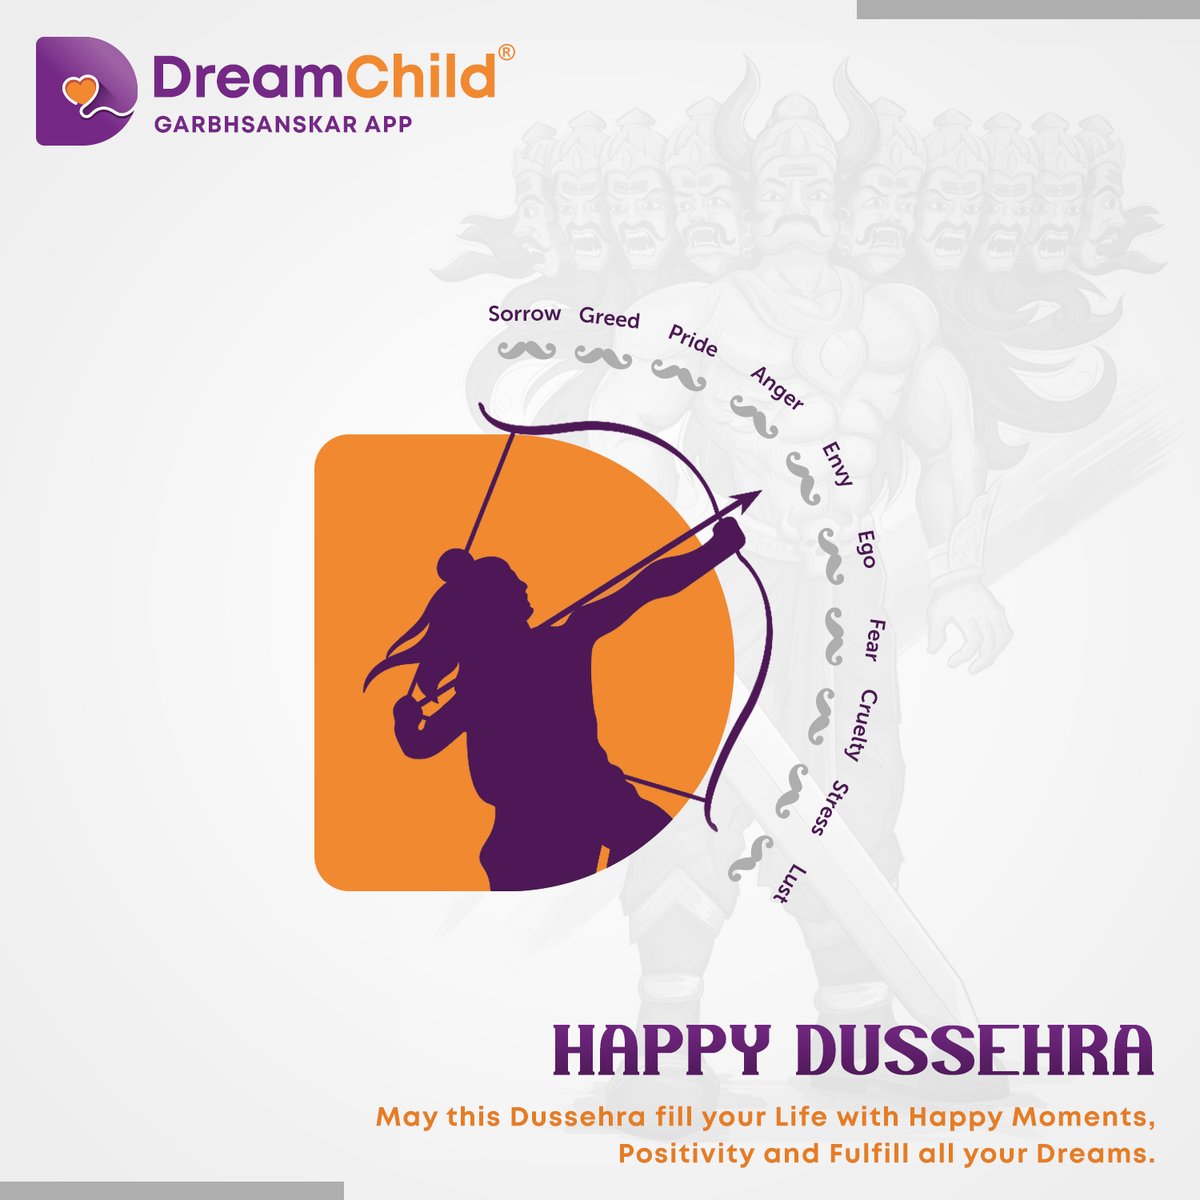 Happy Dussehra!!!
#dreamchild #garbhsanskar #garbhsanskarapp #OnlineGarbhSanskar #newindiamission #dusshera #dussehra2021 #4quotient #development #iqdevelopement #DailyActivities #pregnancycare #happy #healthy #pregnancy